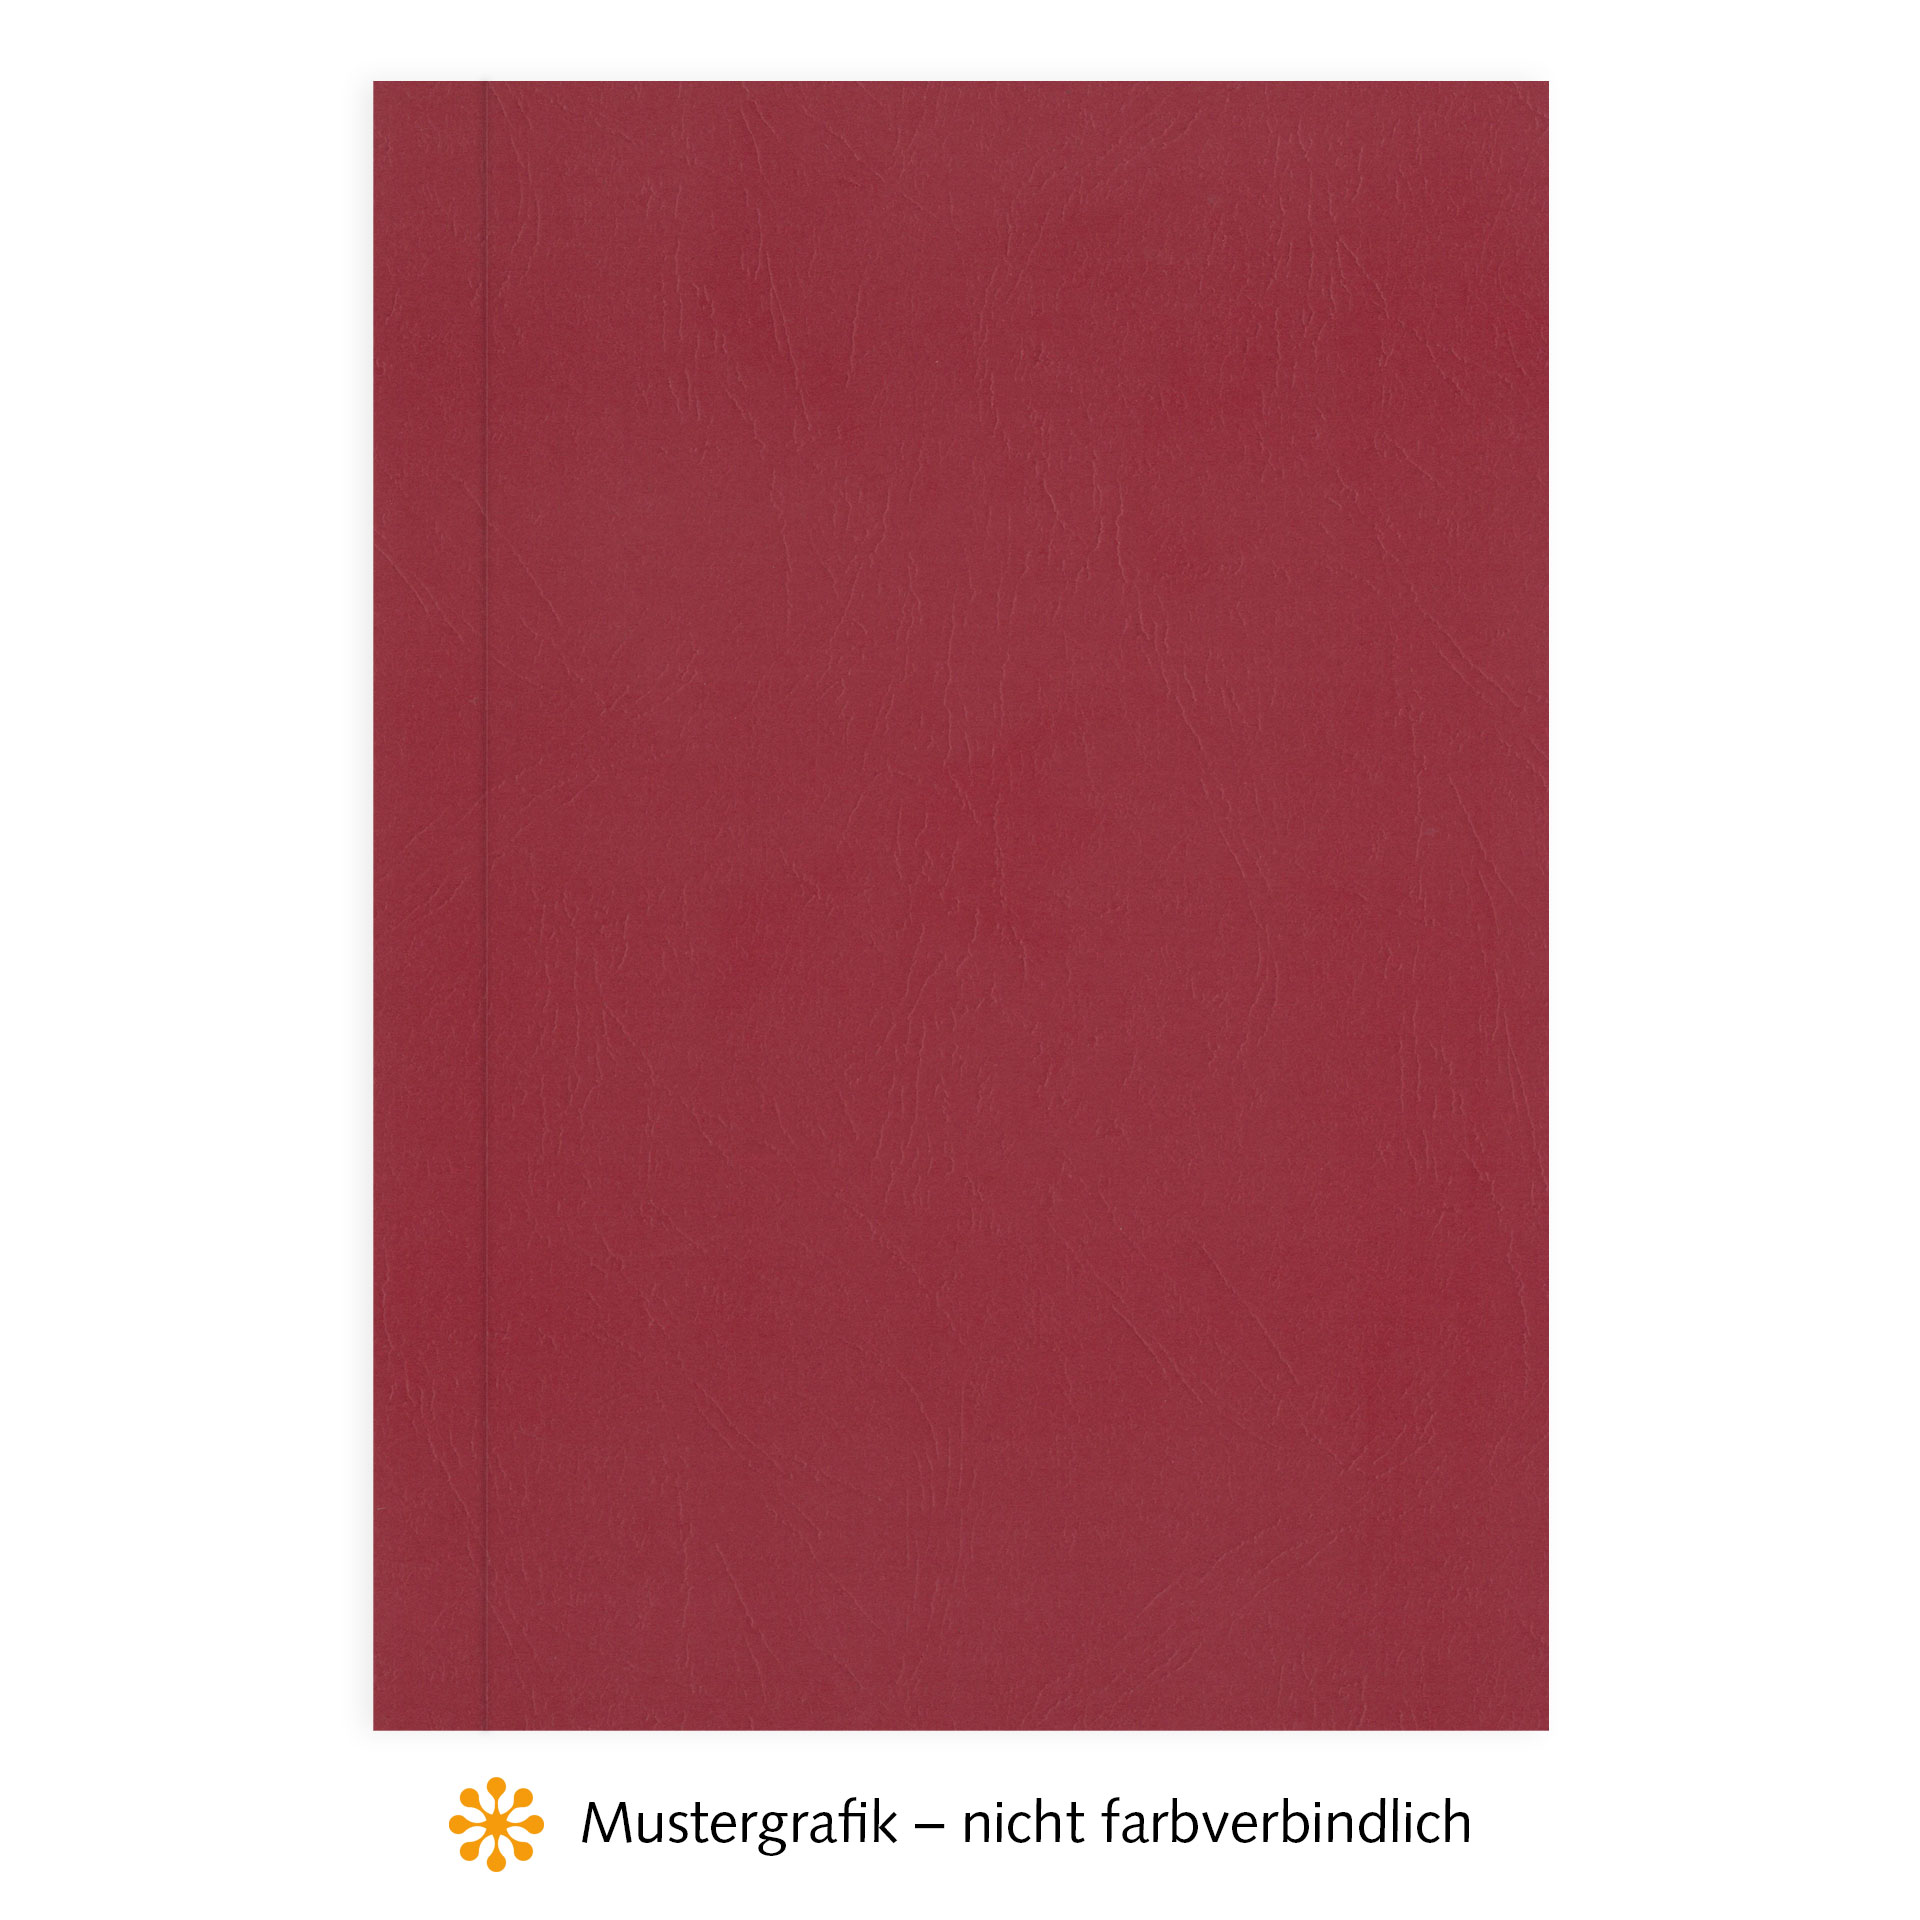 Ösenmappen DUO Cover, mit BEIDSEITIG Karton, Leder, Rot, 1 mm, 1 bis 10 Blatt